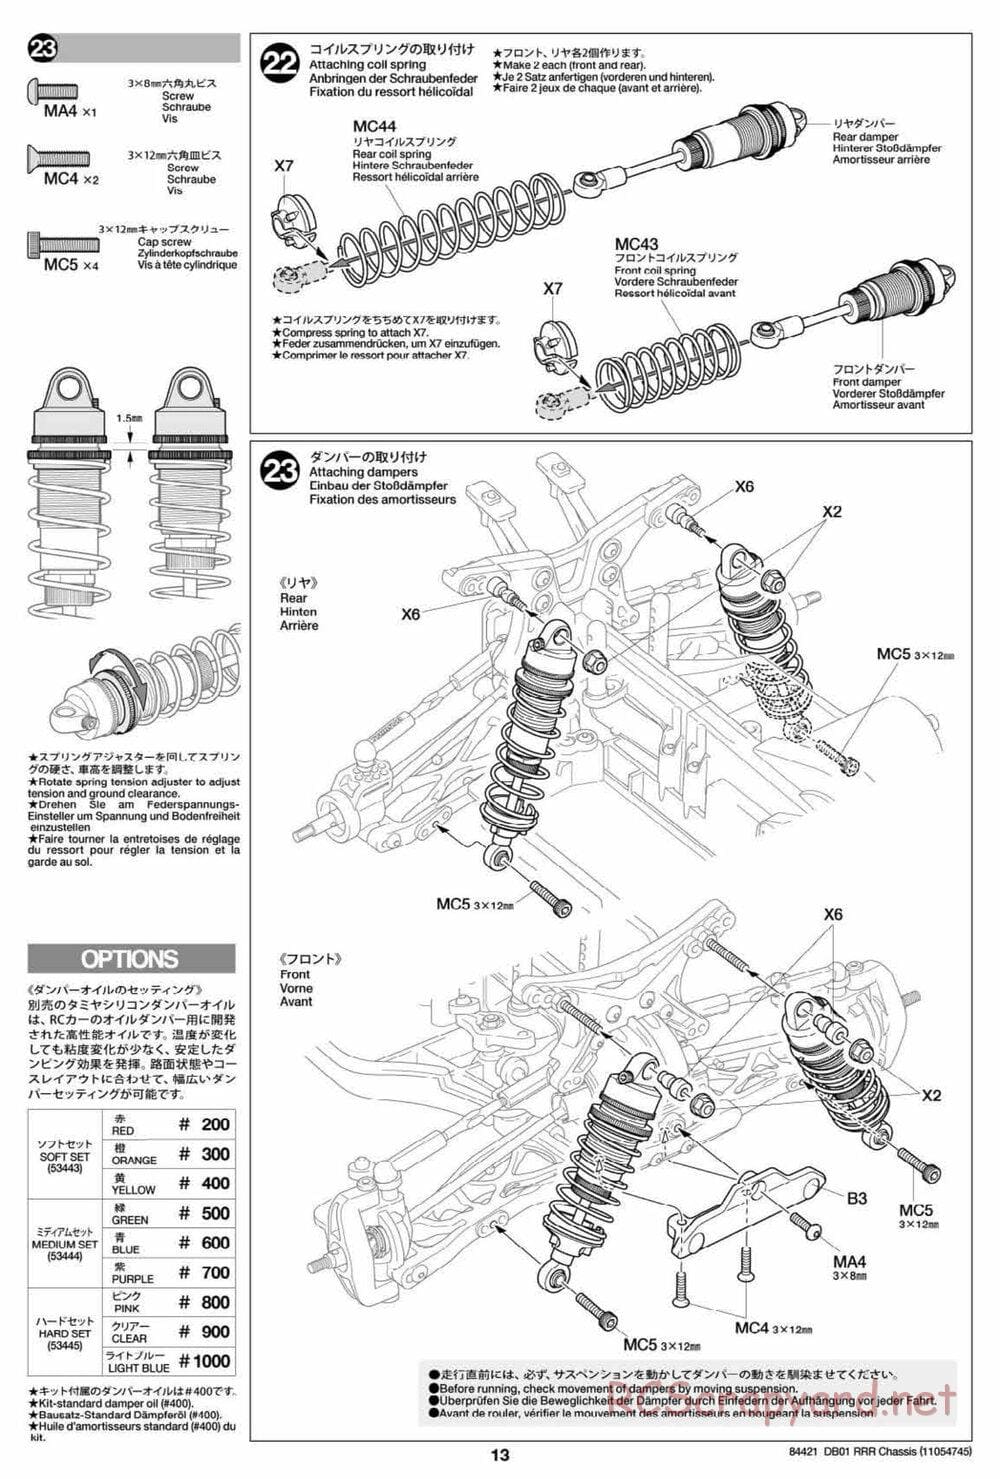 Tamiya - DB-01 RRR Chassis - Manual - Page 13